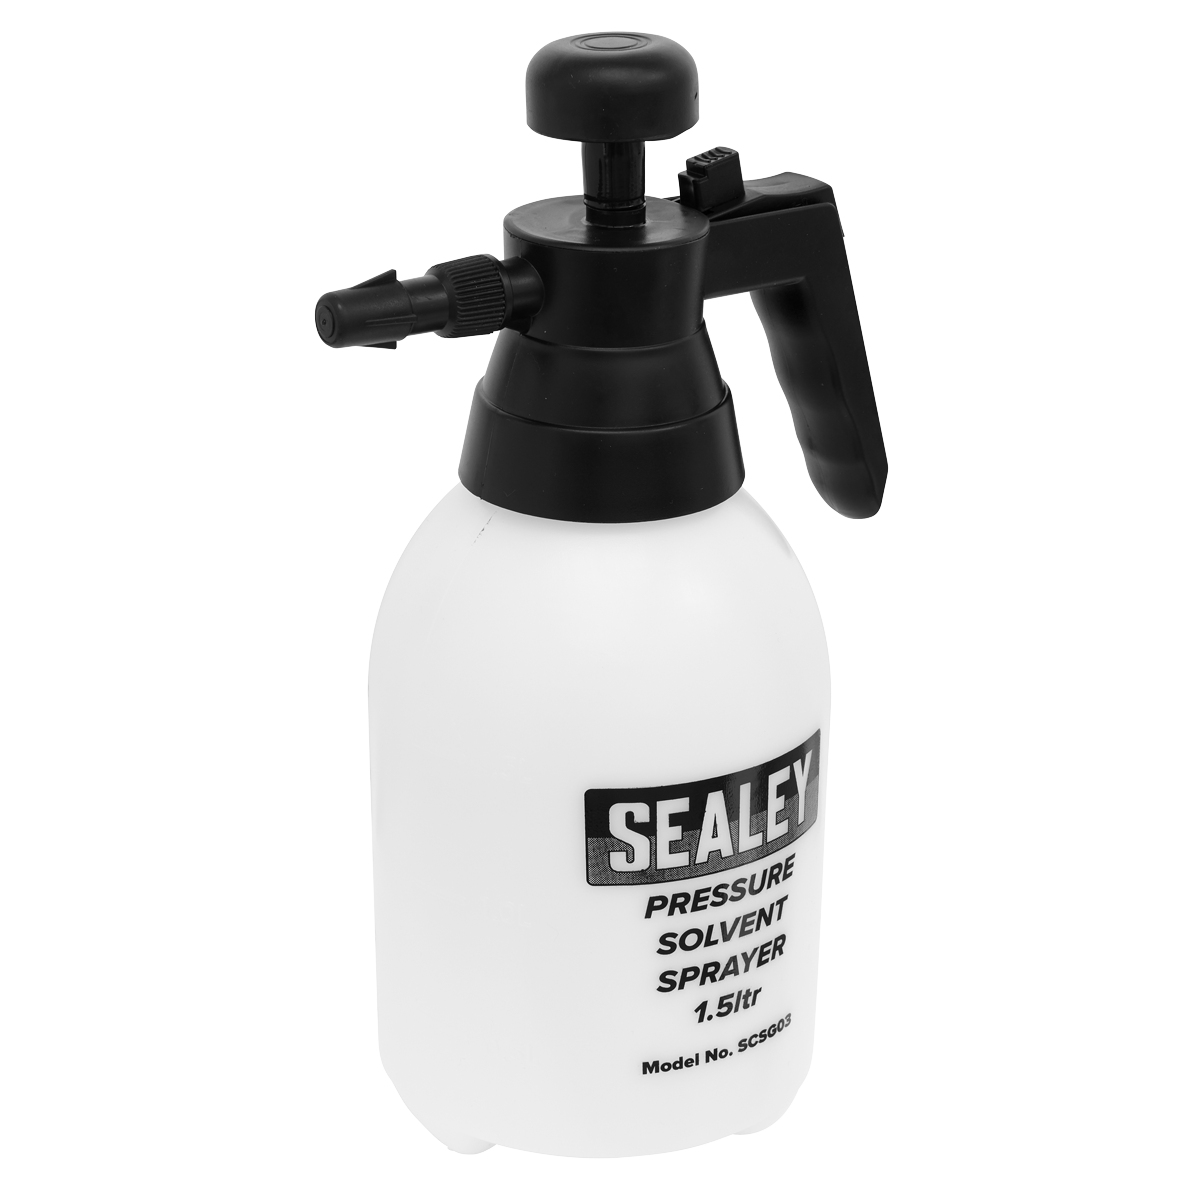 Sealey Pressure Sprayer with Viton® Seals 1.5L